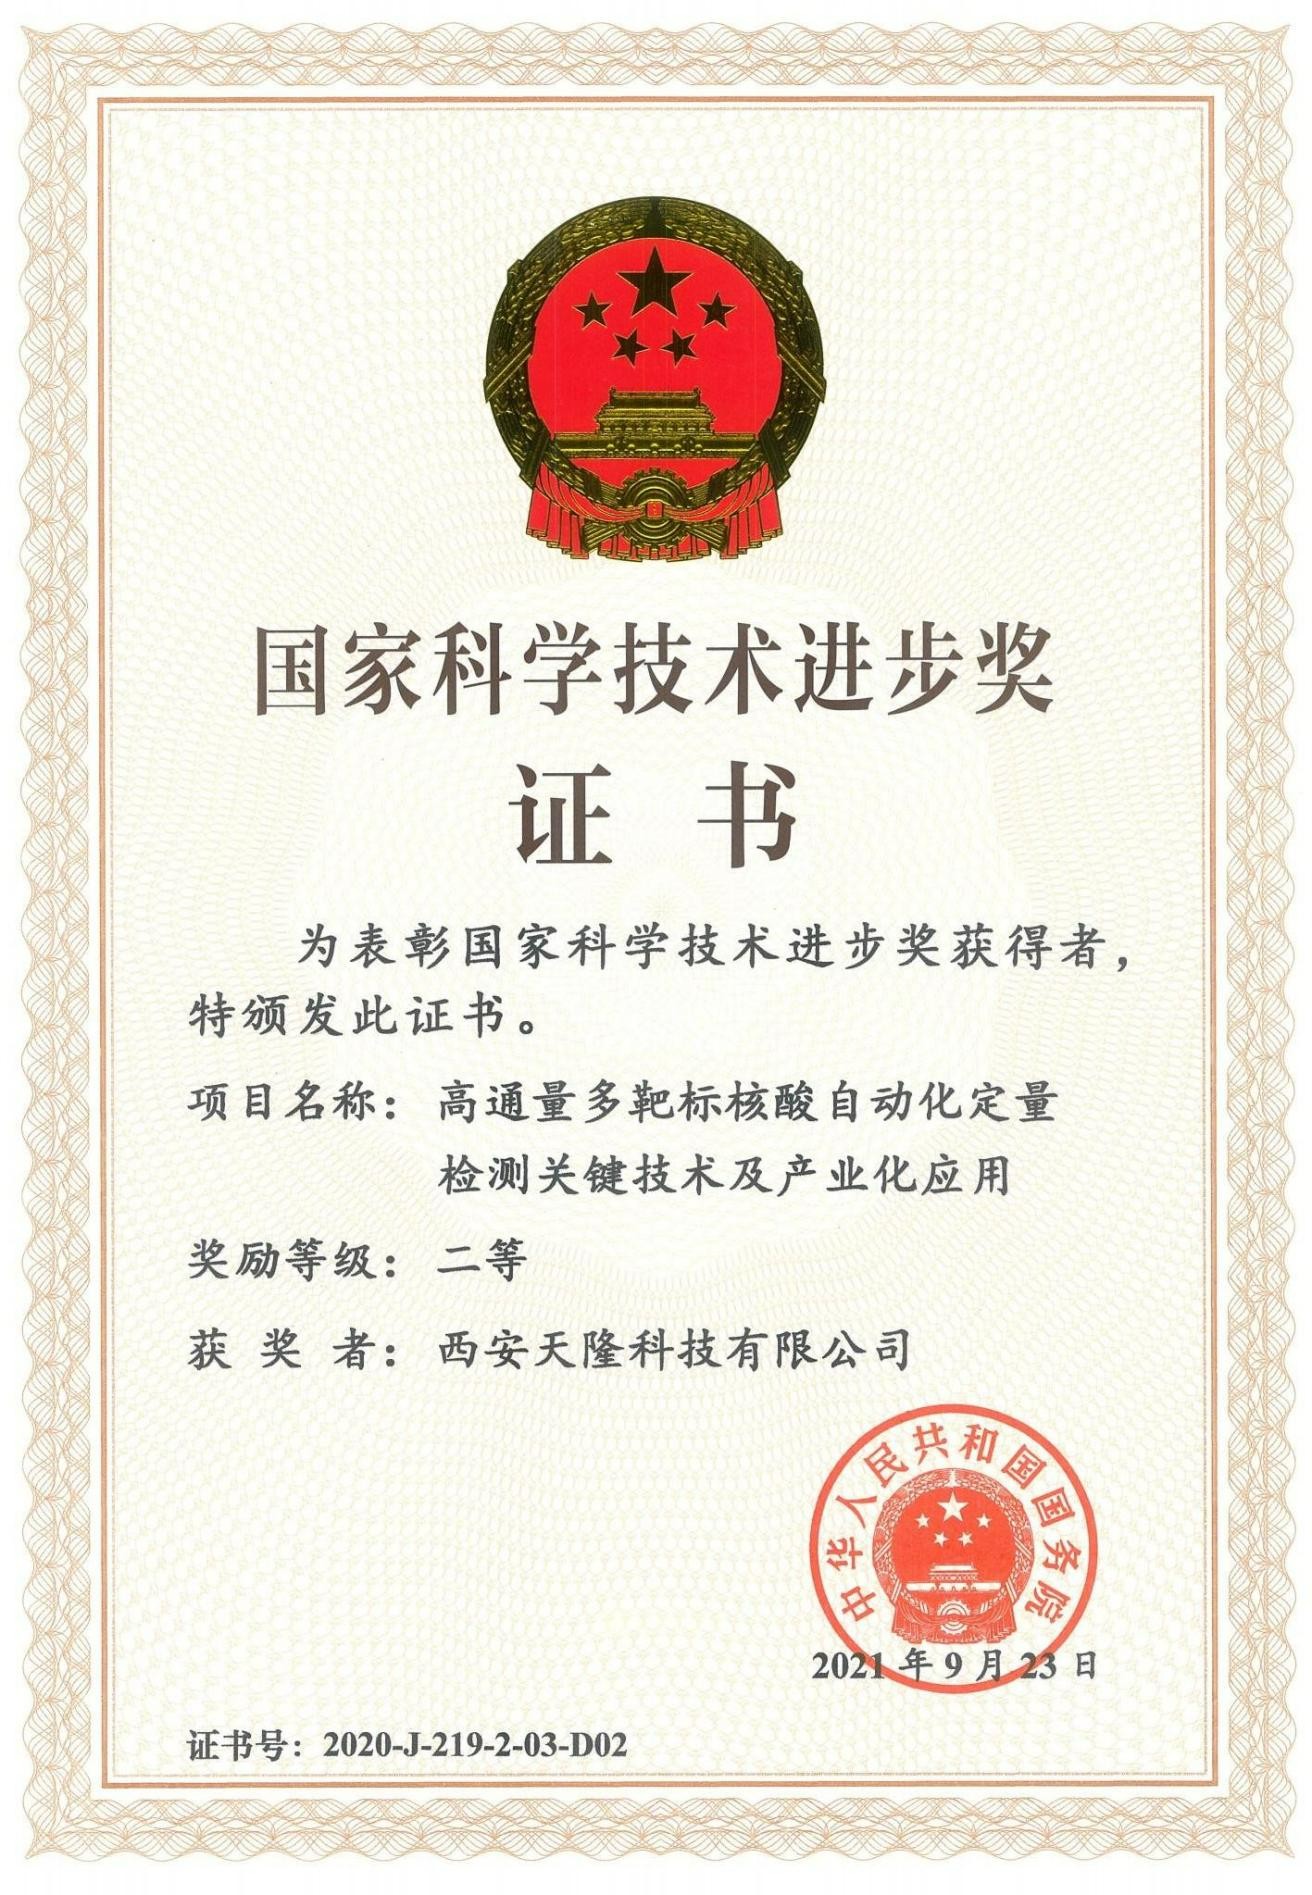 Premio Nacional de Progreso en Ciencia y Tecnología de China (Xi''an Tianlong)